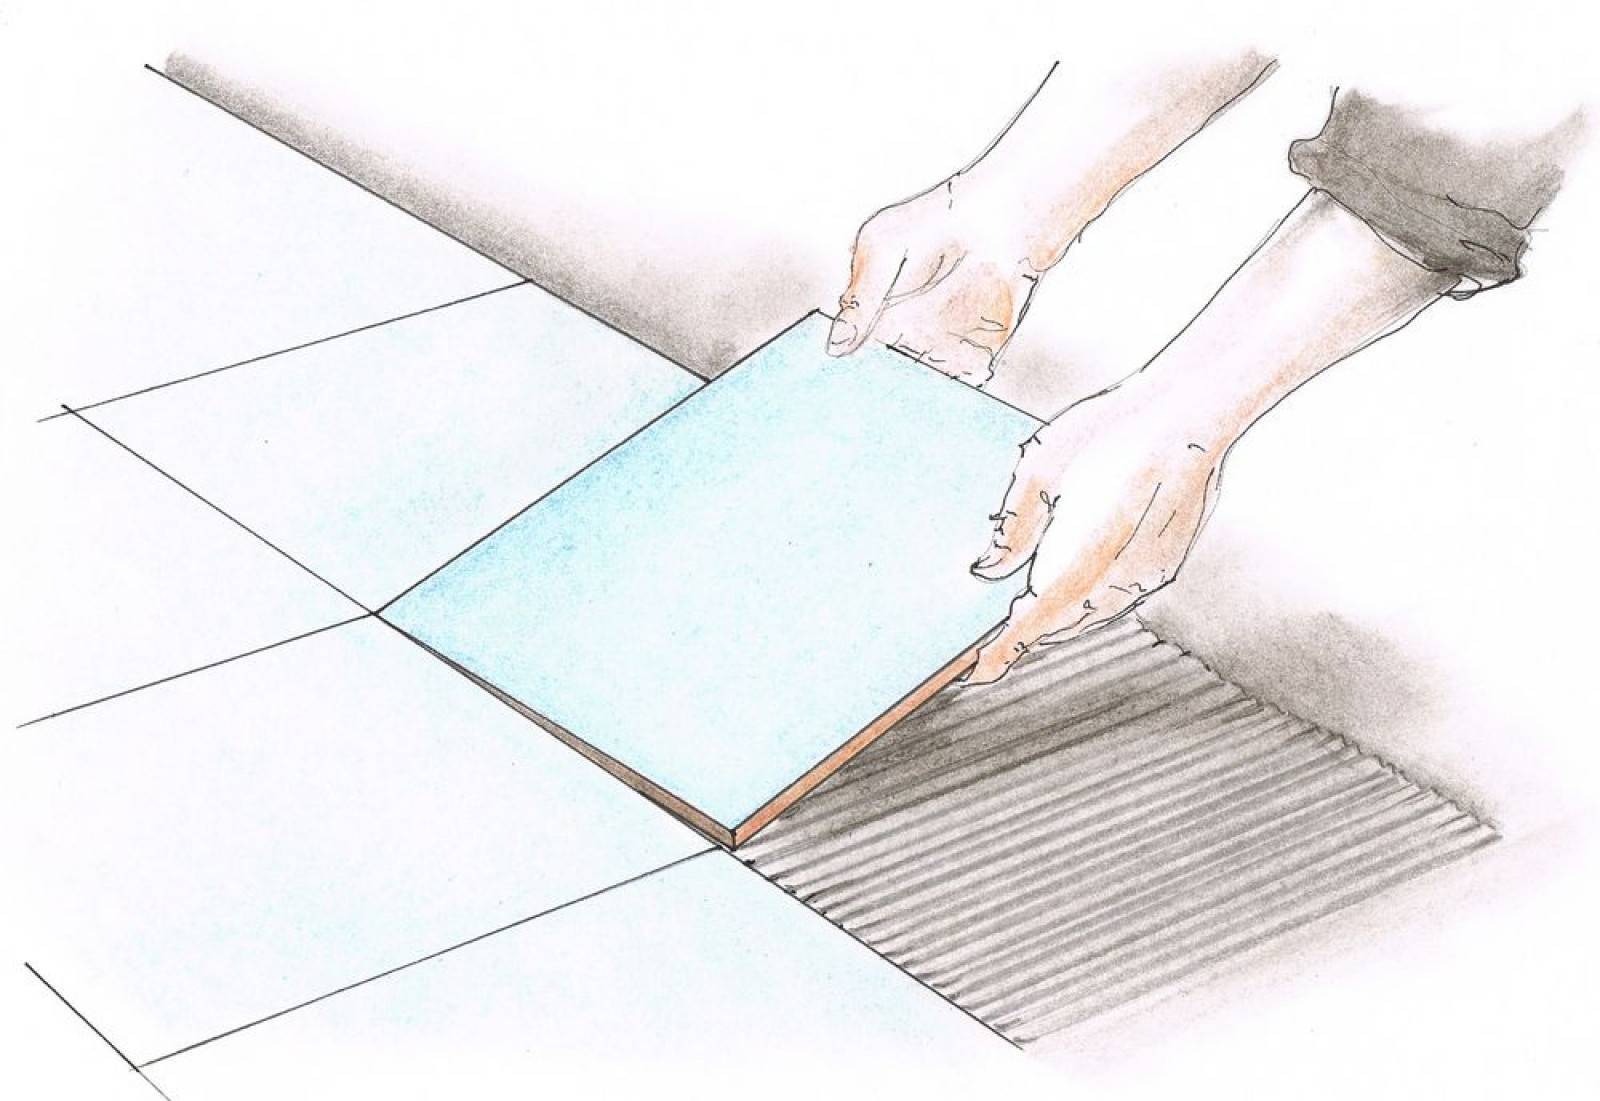 Укладка керамогранита своими руками на пол и стены: инструкция